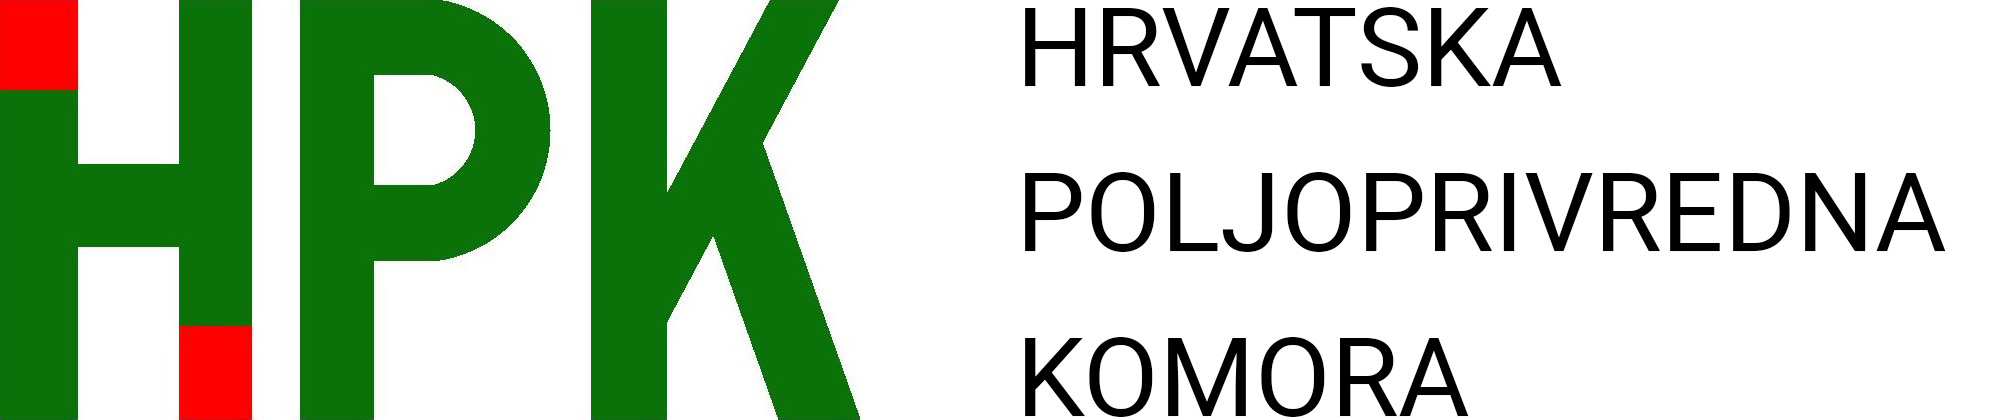 Potpredsjednik HPK Mato Brlošić o povlačenju novaca iz EU | HPK